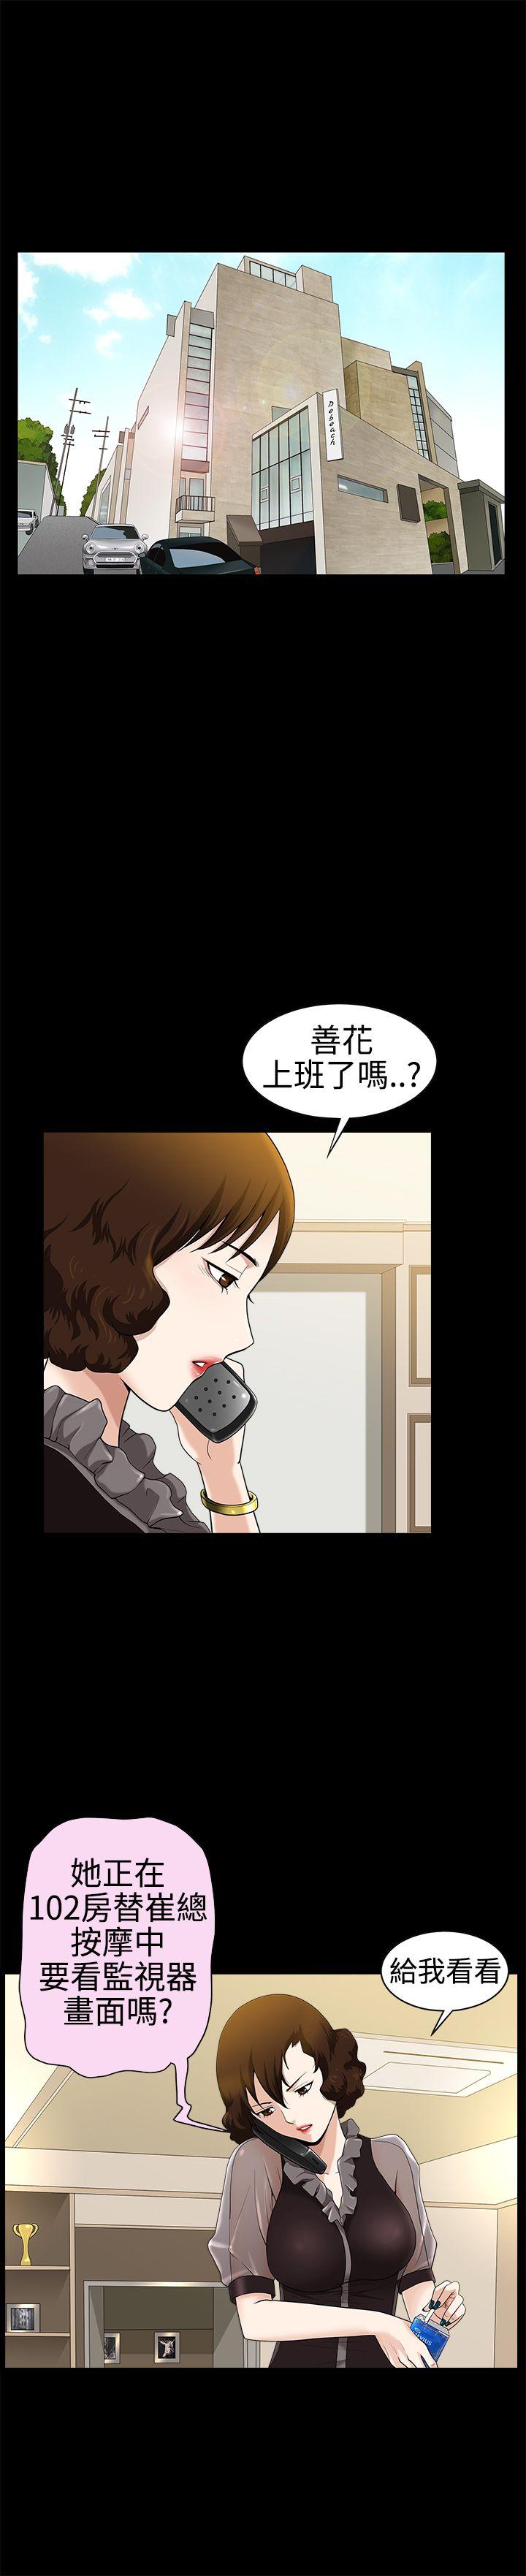 韩国污漫画 人妻性解放3:粗糙的手 第27话 10